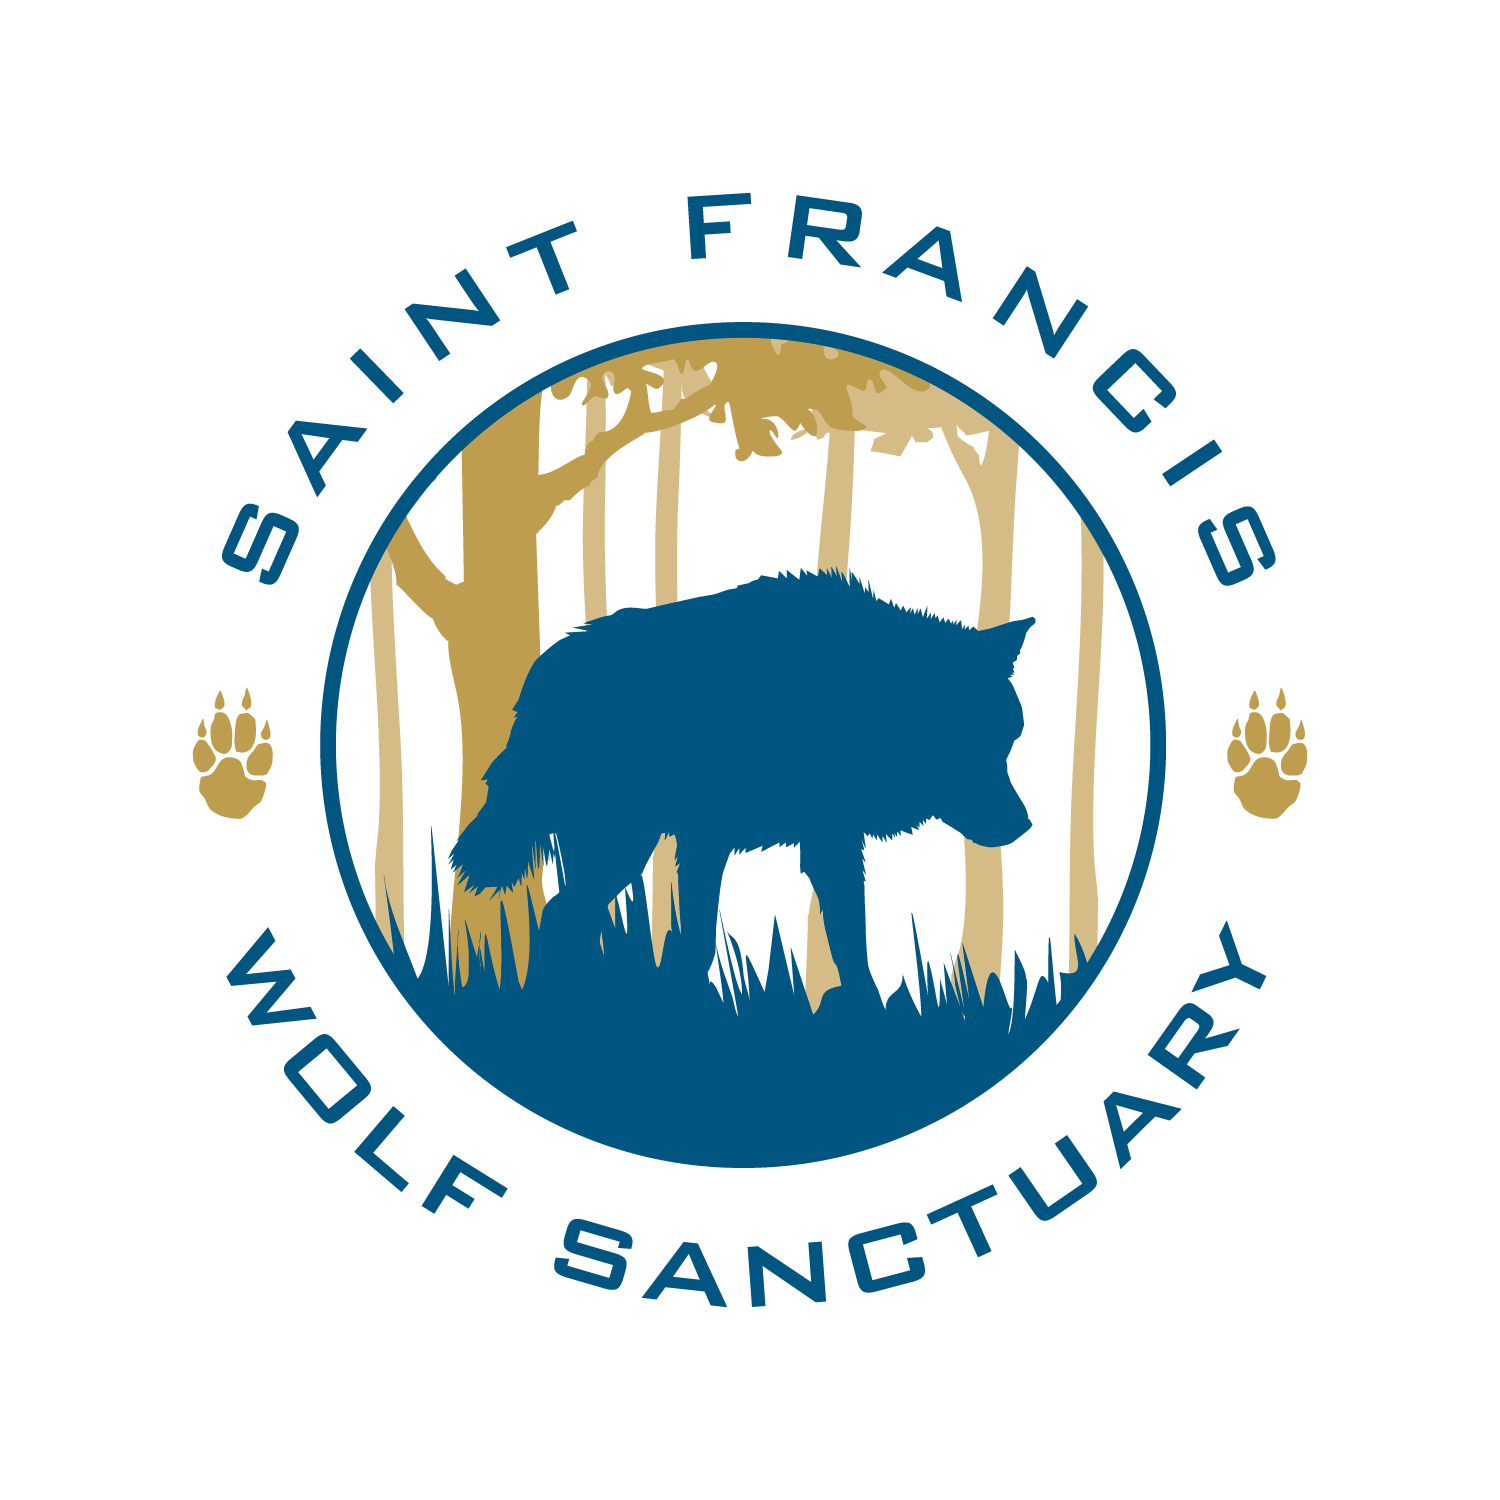 Saint Francis Wolf Sanctuary